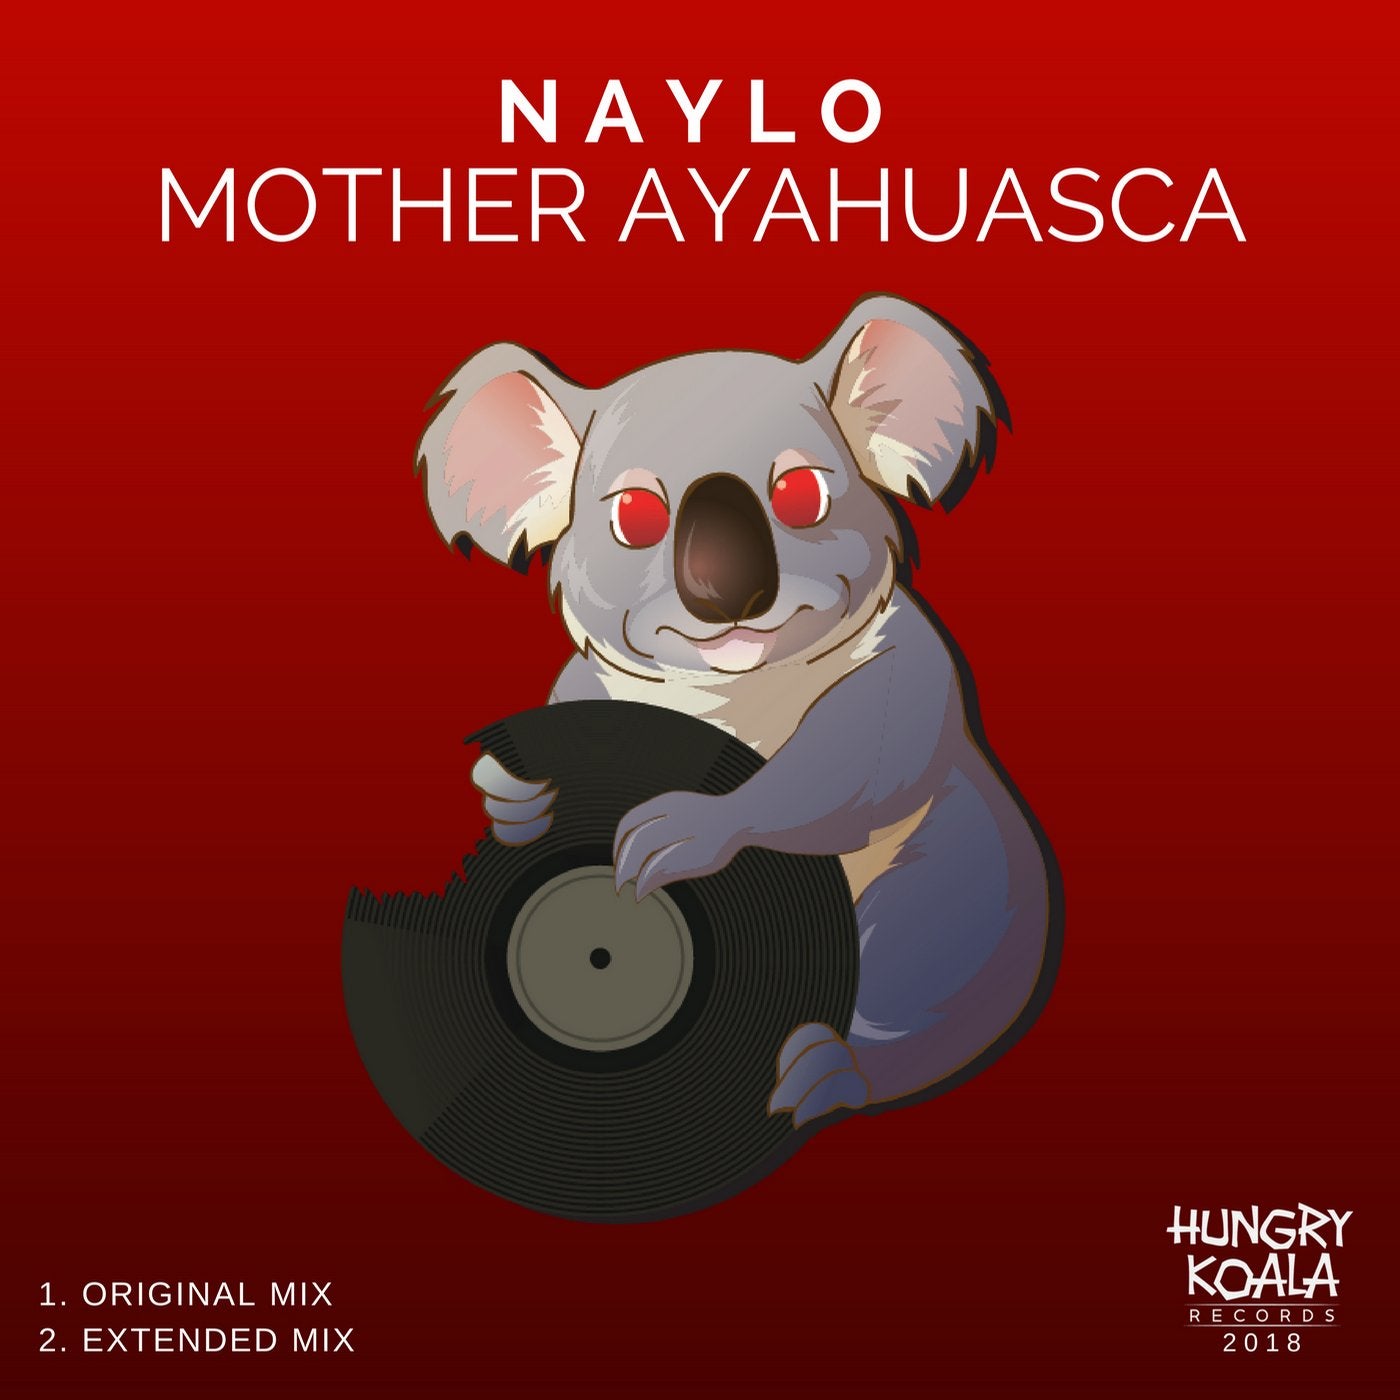 Mother Ayahuasca